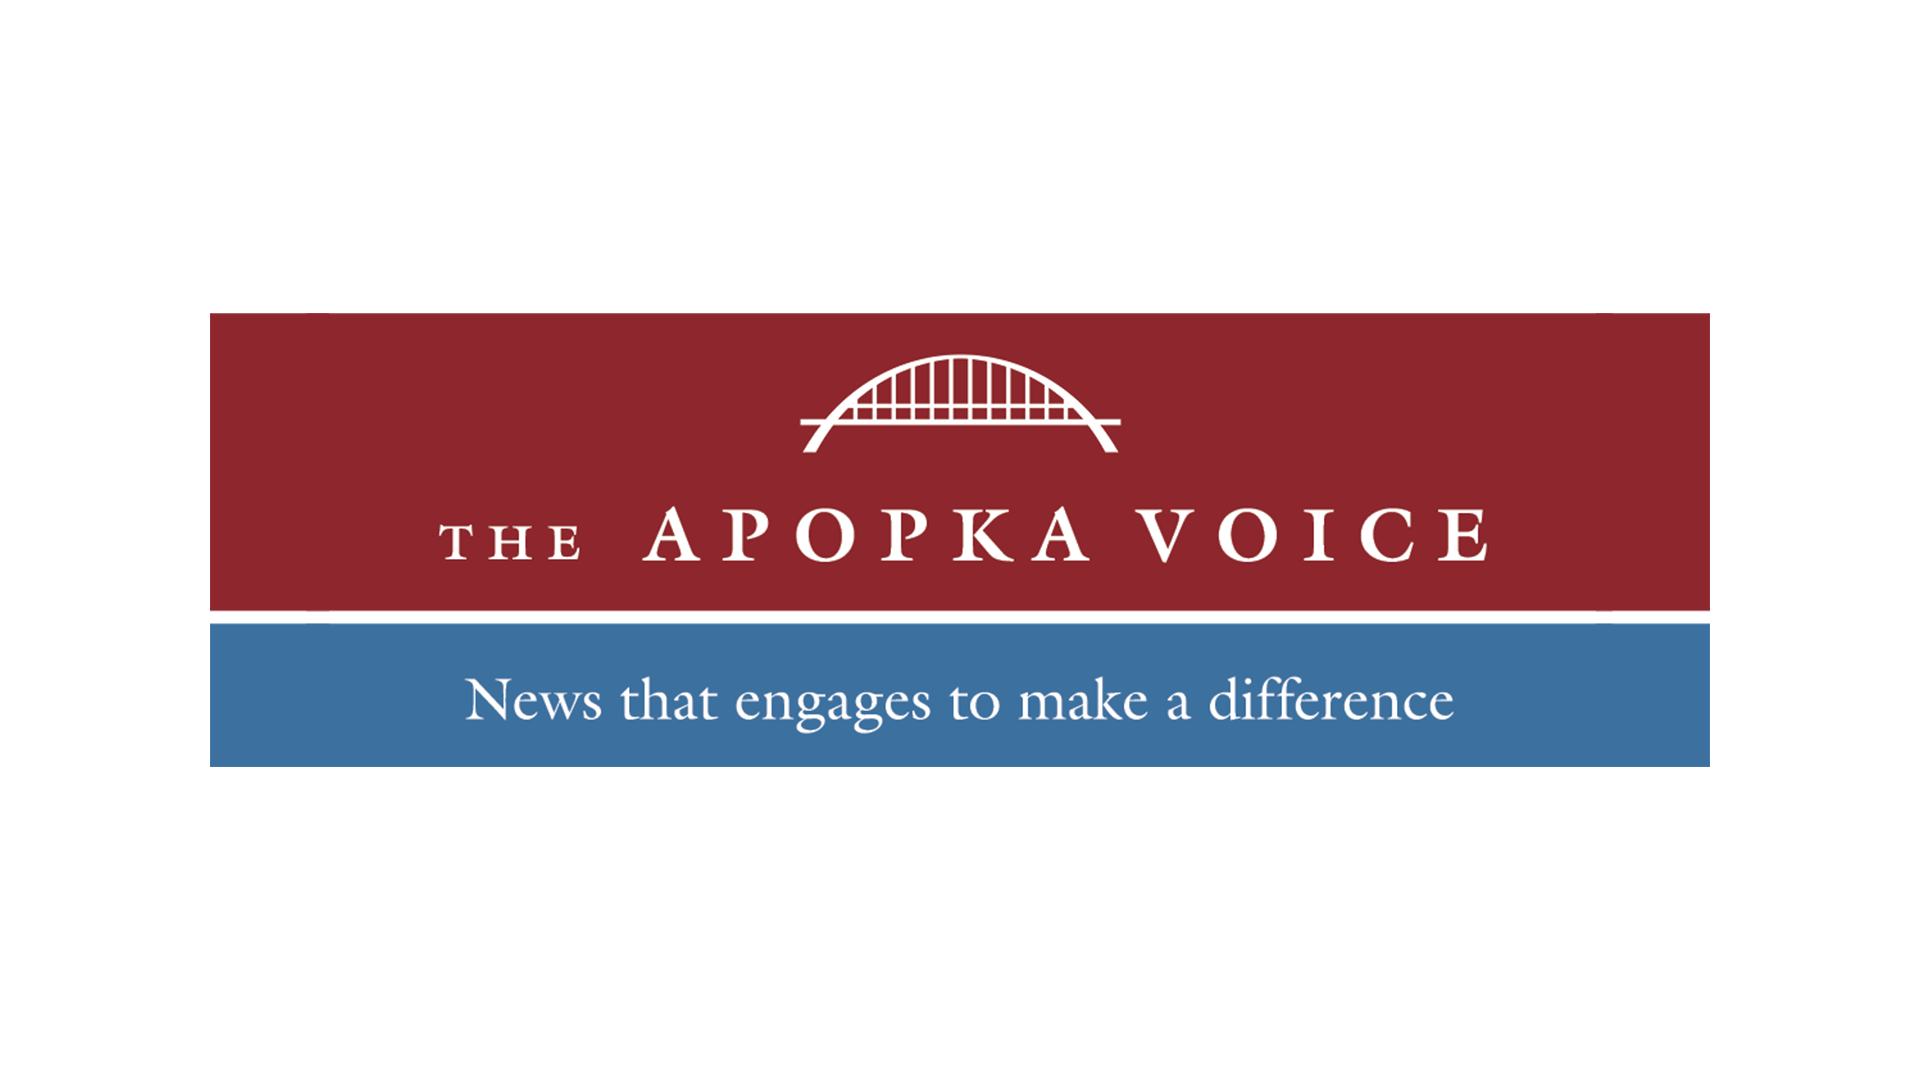 Logotipo de The Apopka Voice